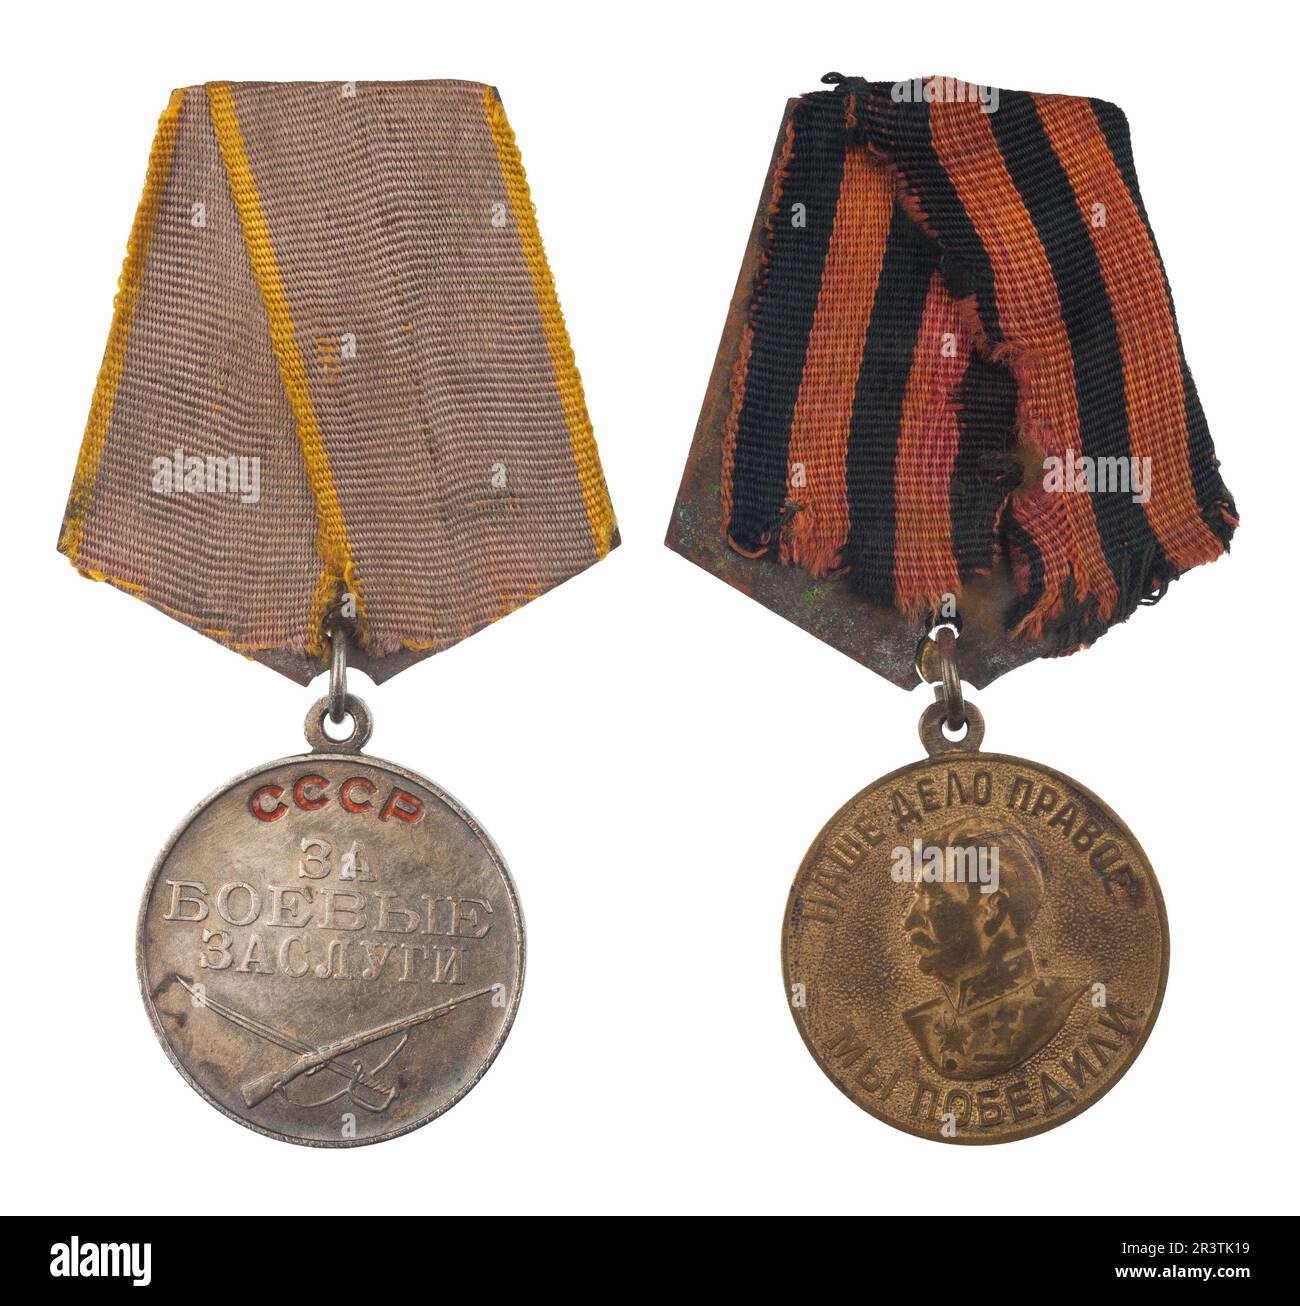 Medaille militaire Banque d'images détourées - Alamy